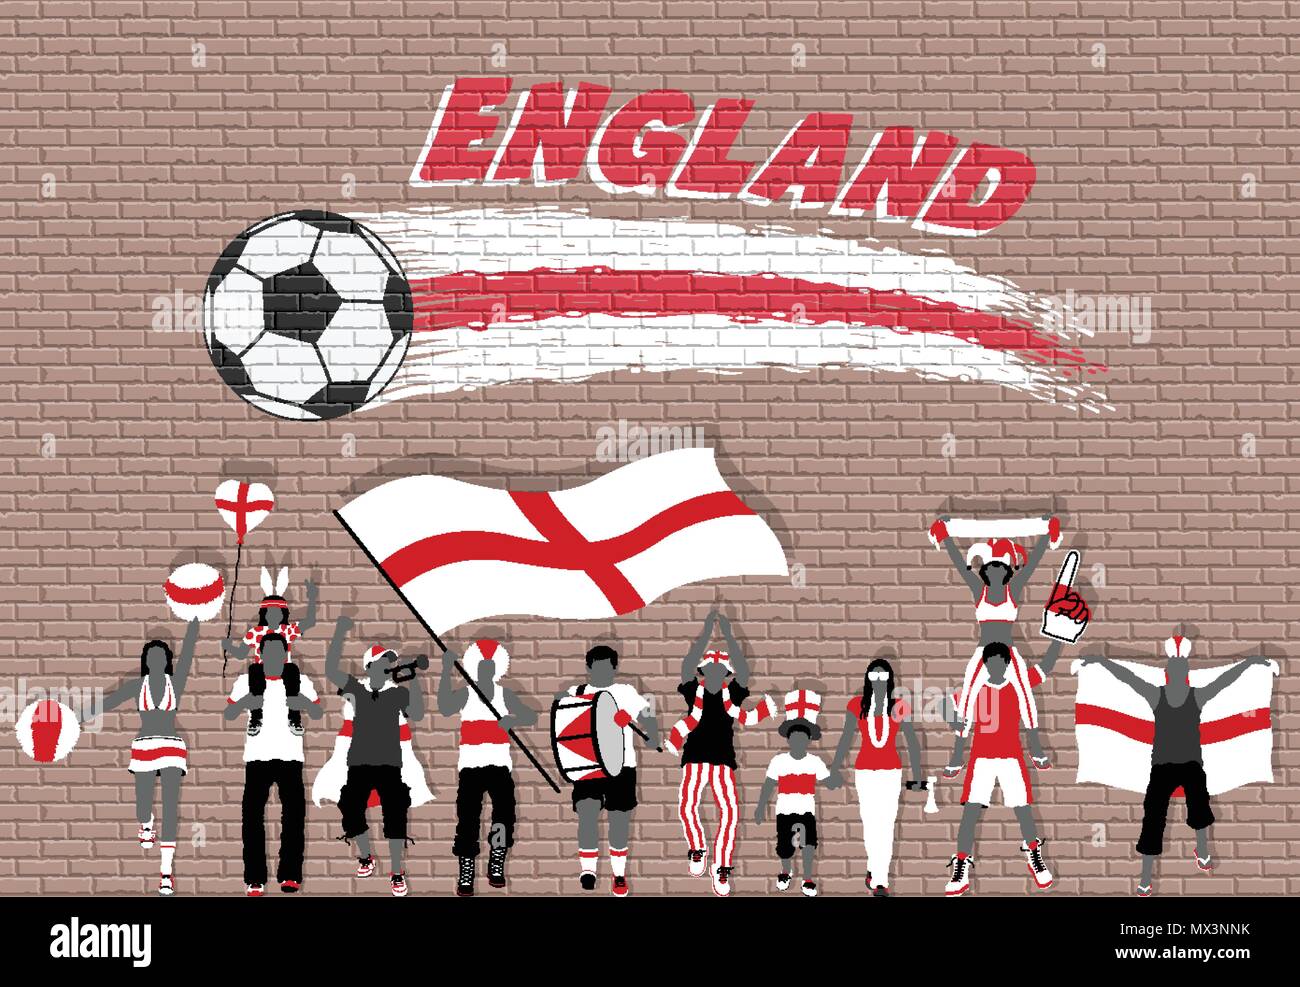 Englische Fußball-Fans mit England Flagge Farben vor Fußball Graffiti. Alle  Objekte werden in verschiedenen Schichten und der Text Arten d  Stock-Vektorgrafik - Alamy